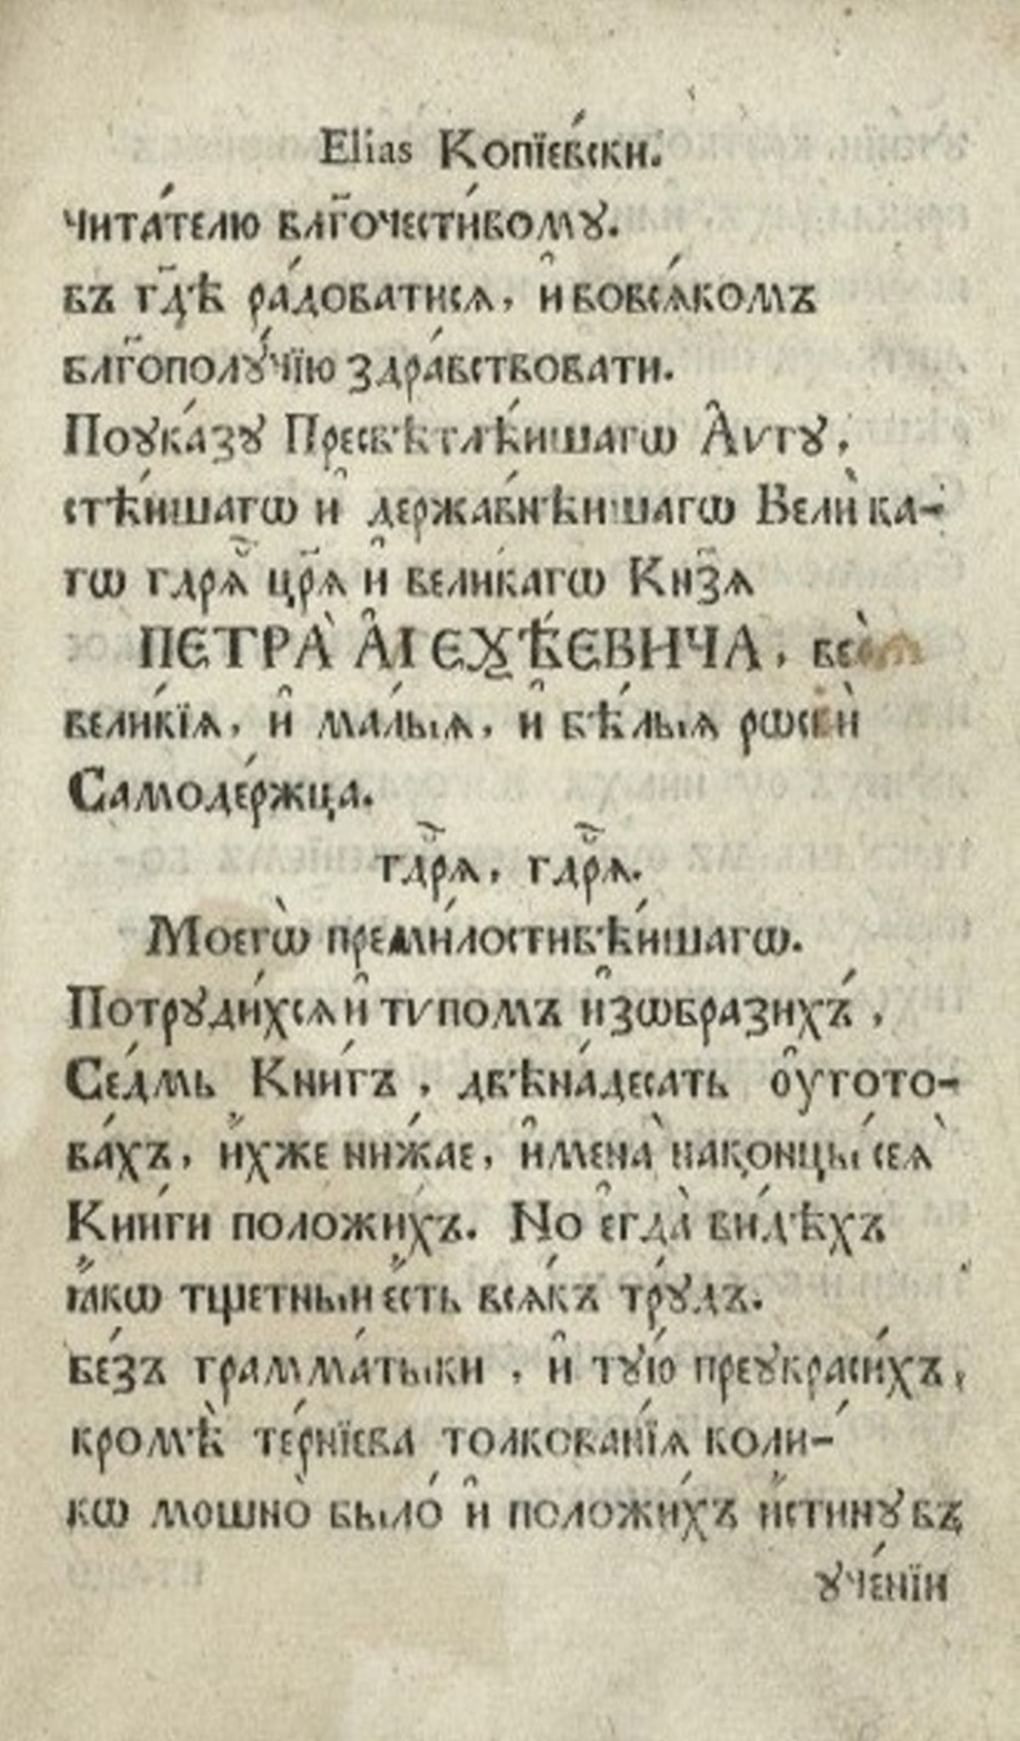 Учебник «Грамматика латинская и русская» был подготовлен и издан по заказу Петра I